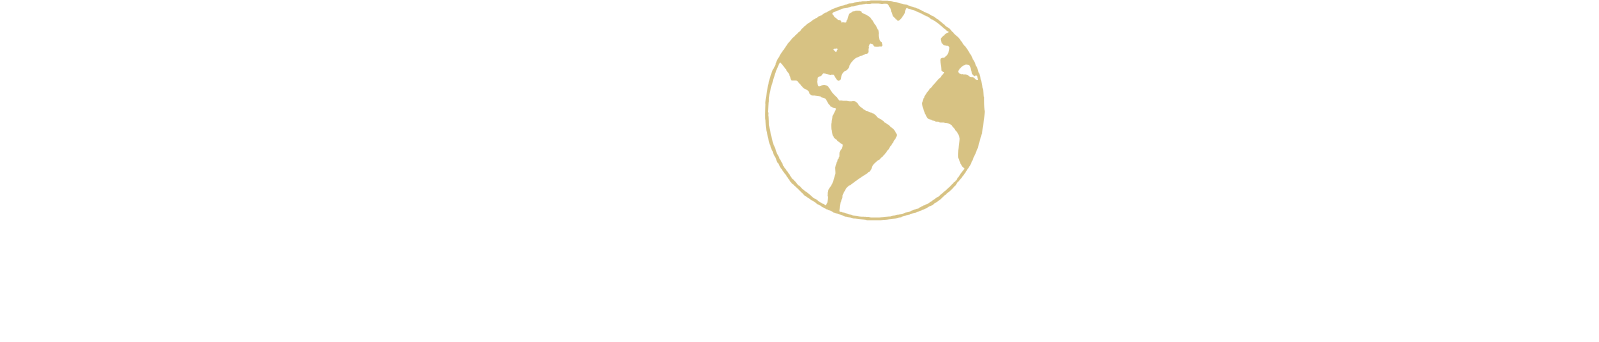 Seaboard logo grand pour les fonds sombres (PNG transparent)